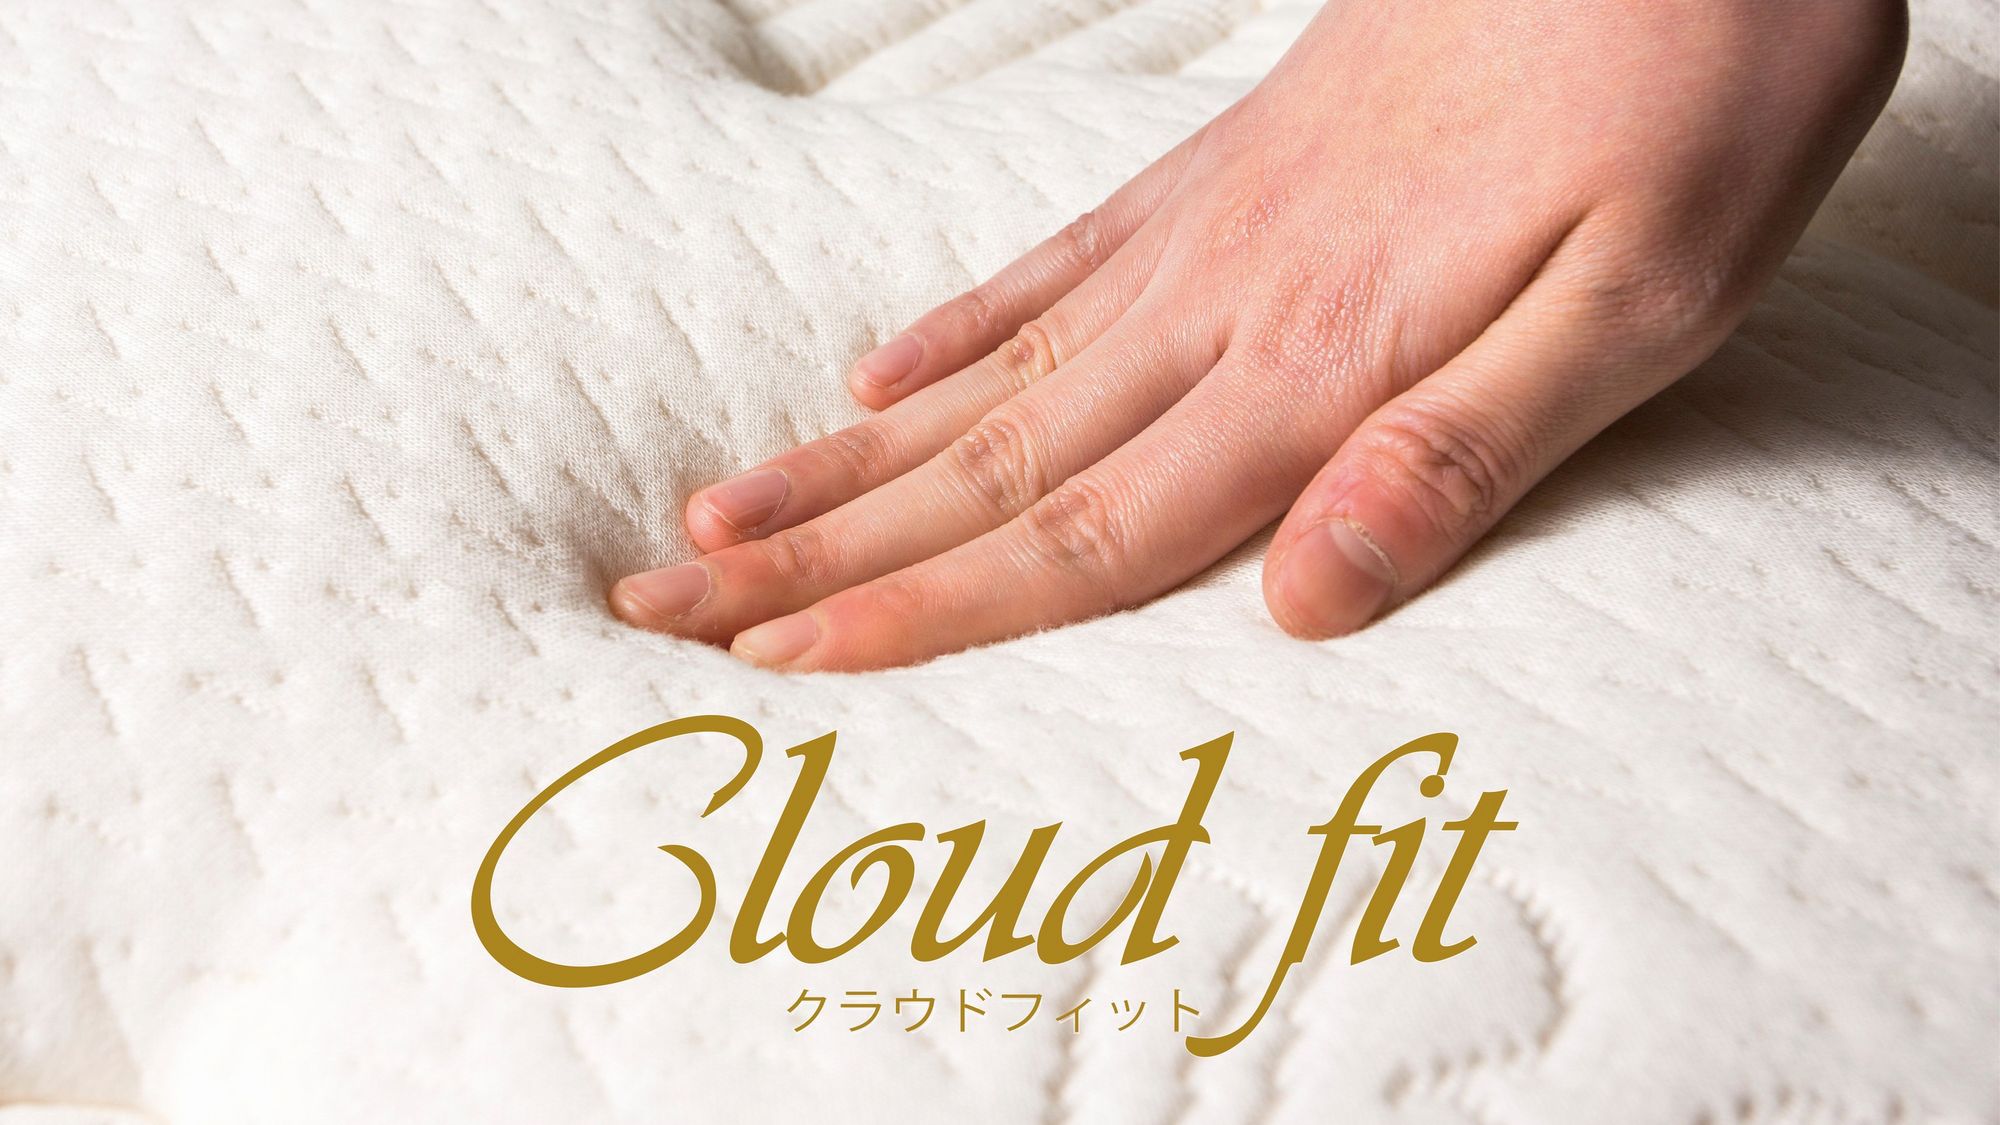 Cloud fit